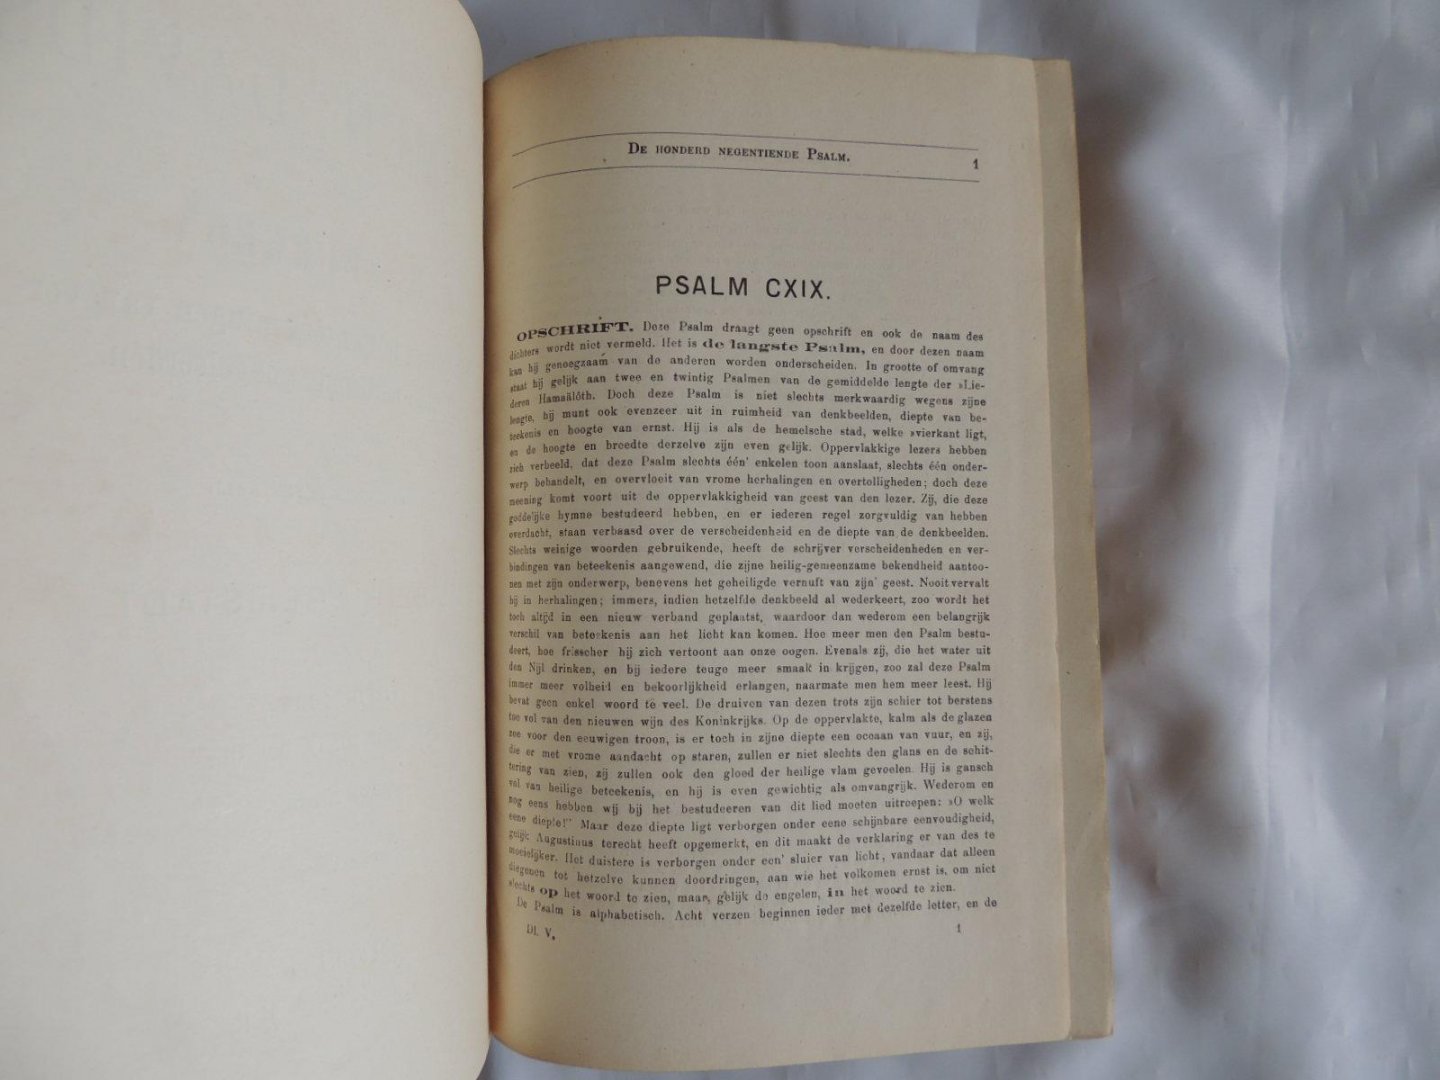 Spurgeon C. H. - Elisabeth Freijstadt - De Psalmen Davids door C.H. Spurgeon. met ophelderende aanteekening en van verschillende beroemde Godgeleerden